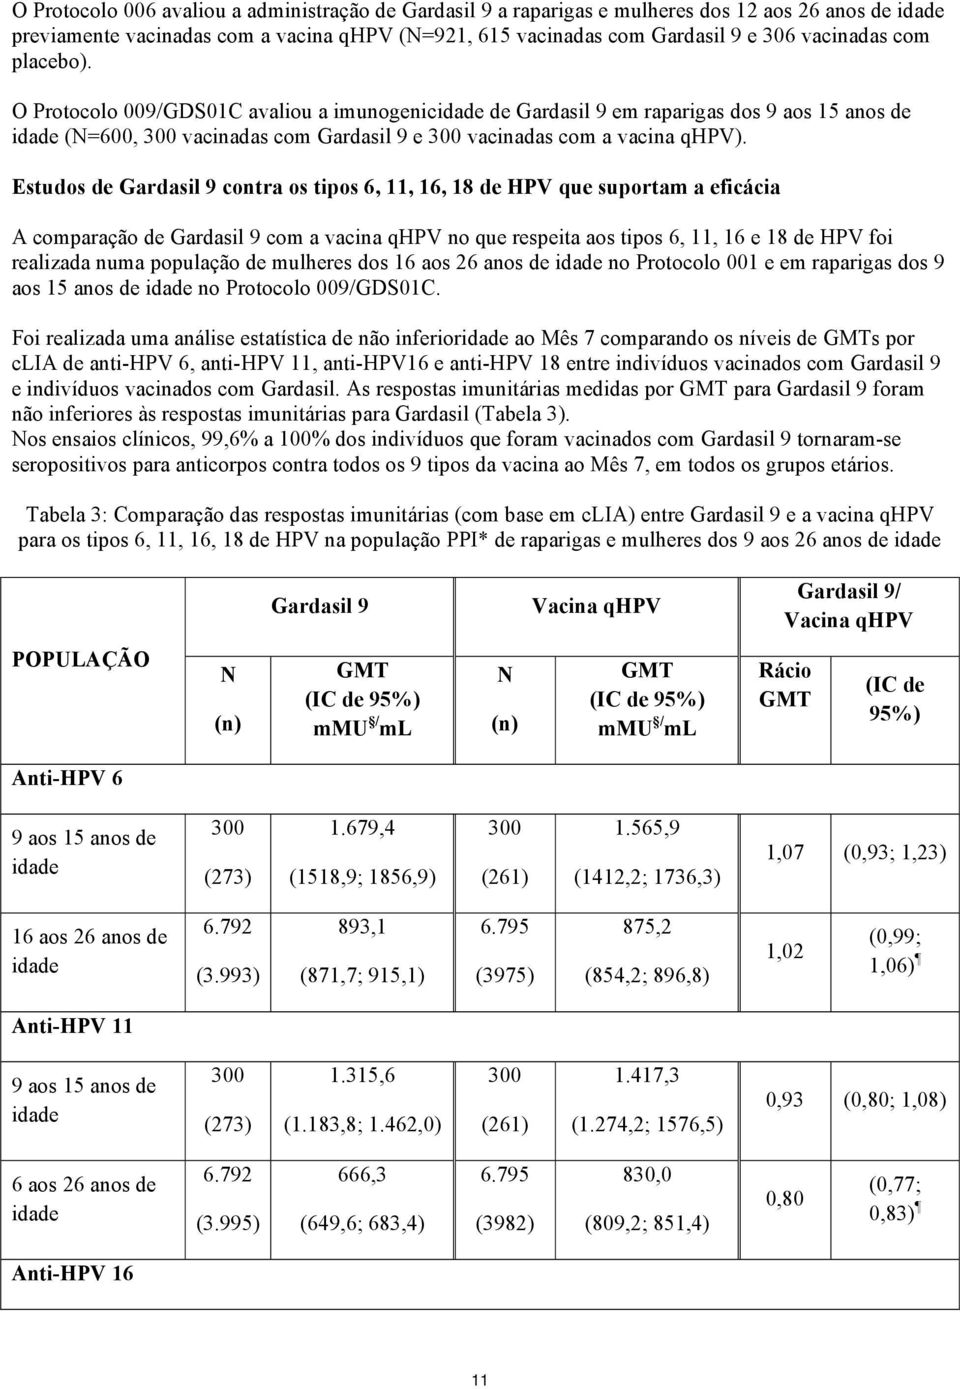 Estudos de Gardasil 9 contra os tipos 6, 11, 16, 18 de HPV que suportam a eficácia A comparação de Gardasil 9 com a vacina qhpv no que respeita aos tipos 6, 11, 16 e 18 de HPV foi realizada numa